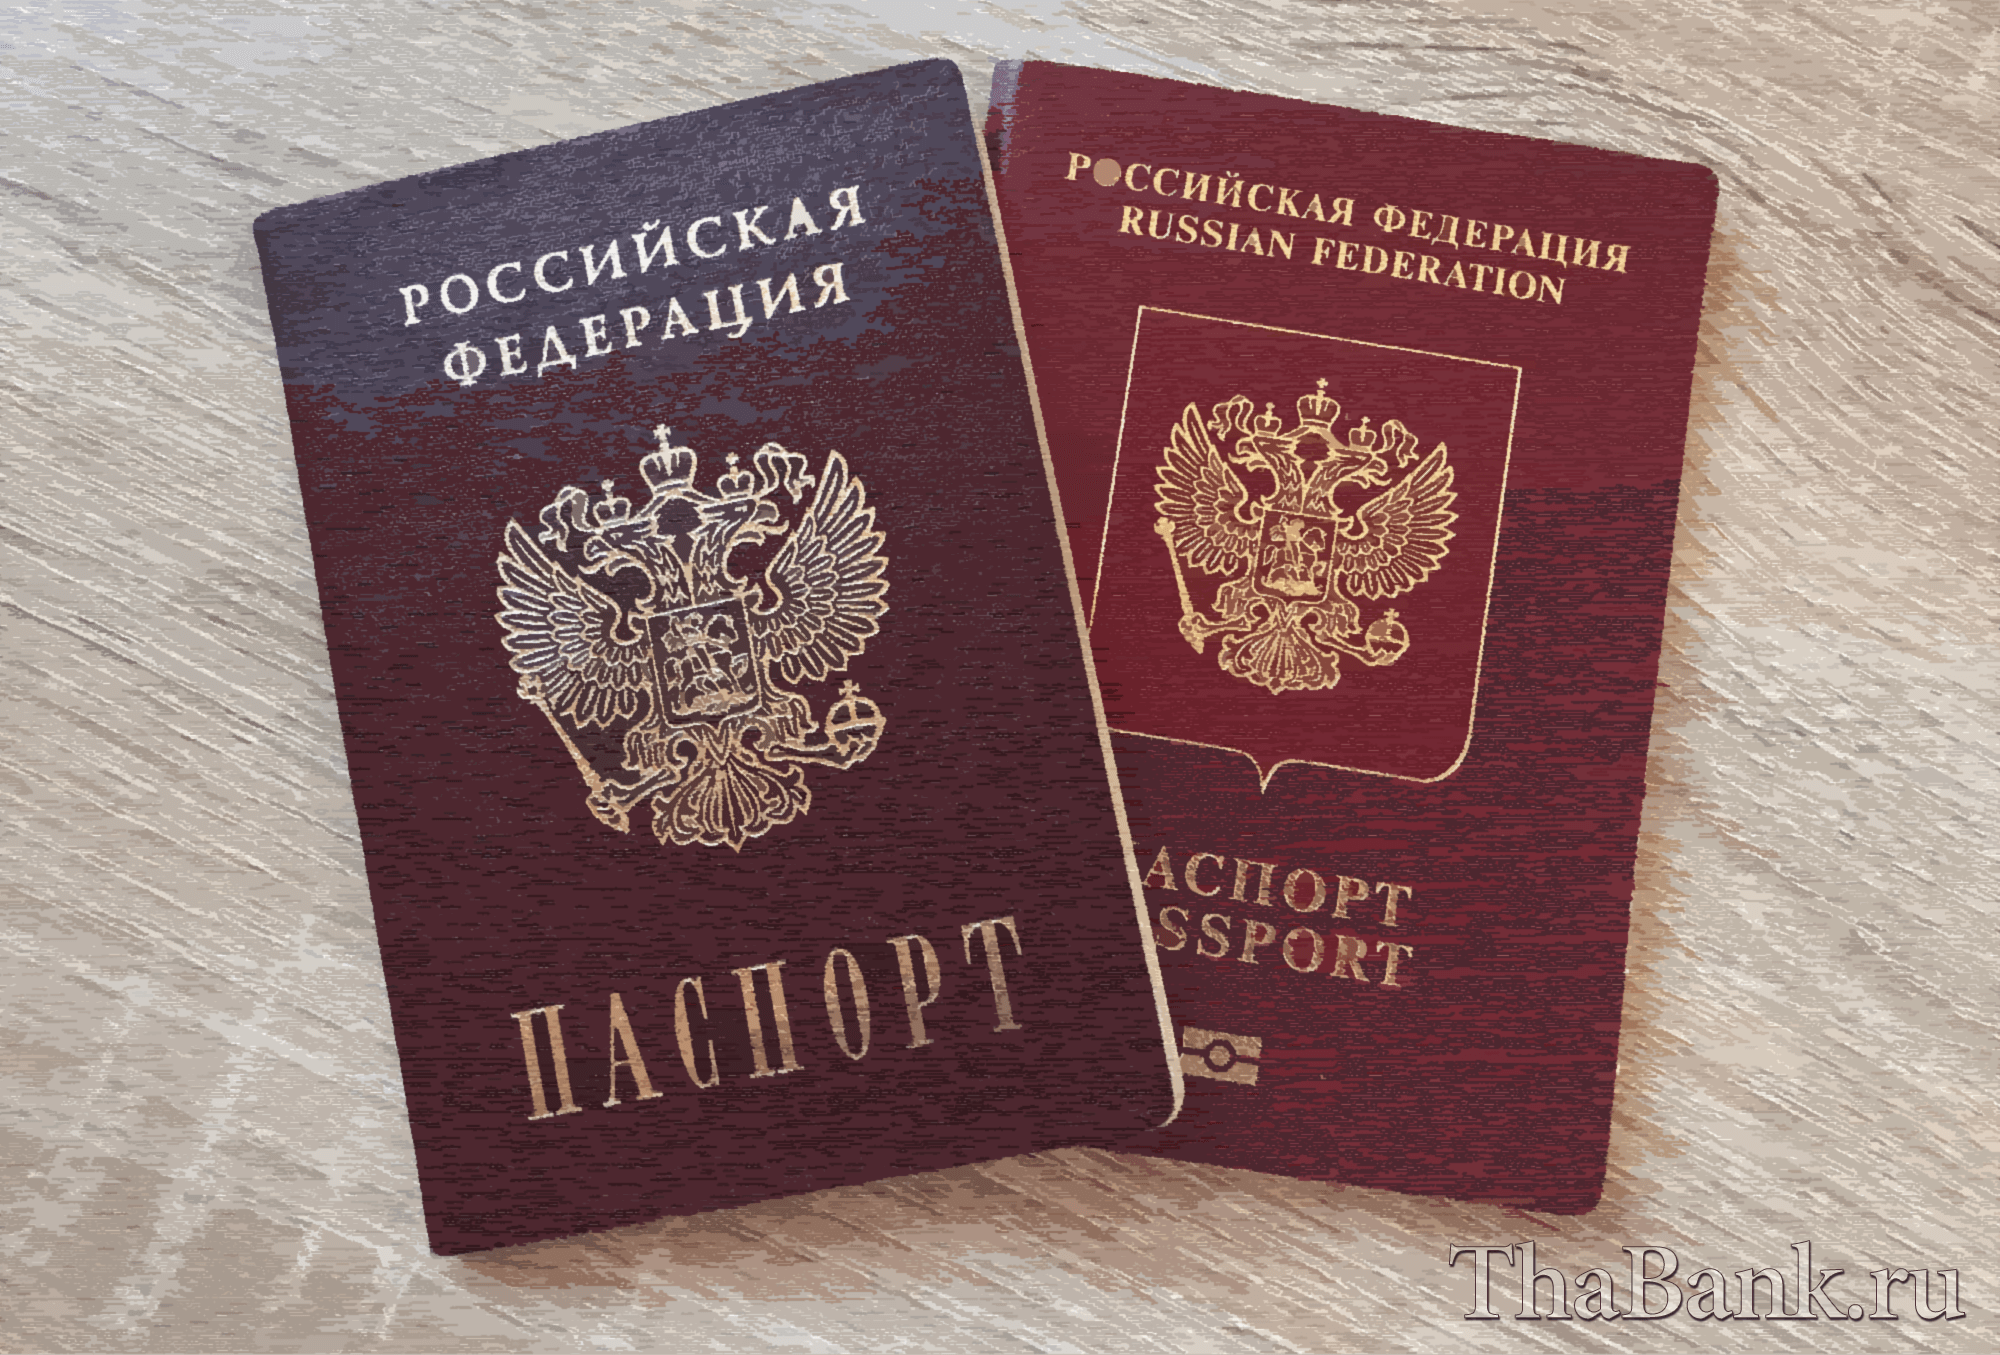 Сколько нужно фото для замены паспорта в 45 лет